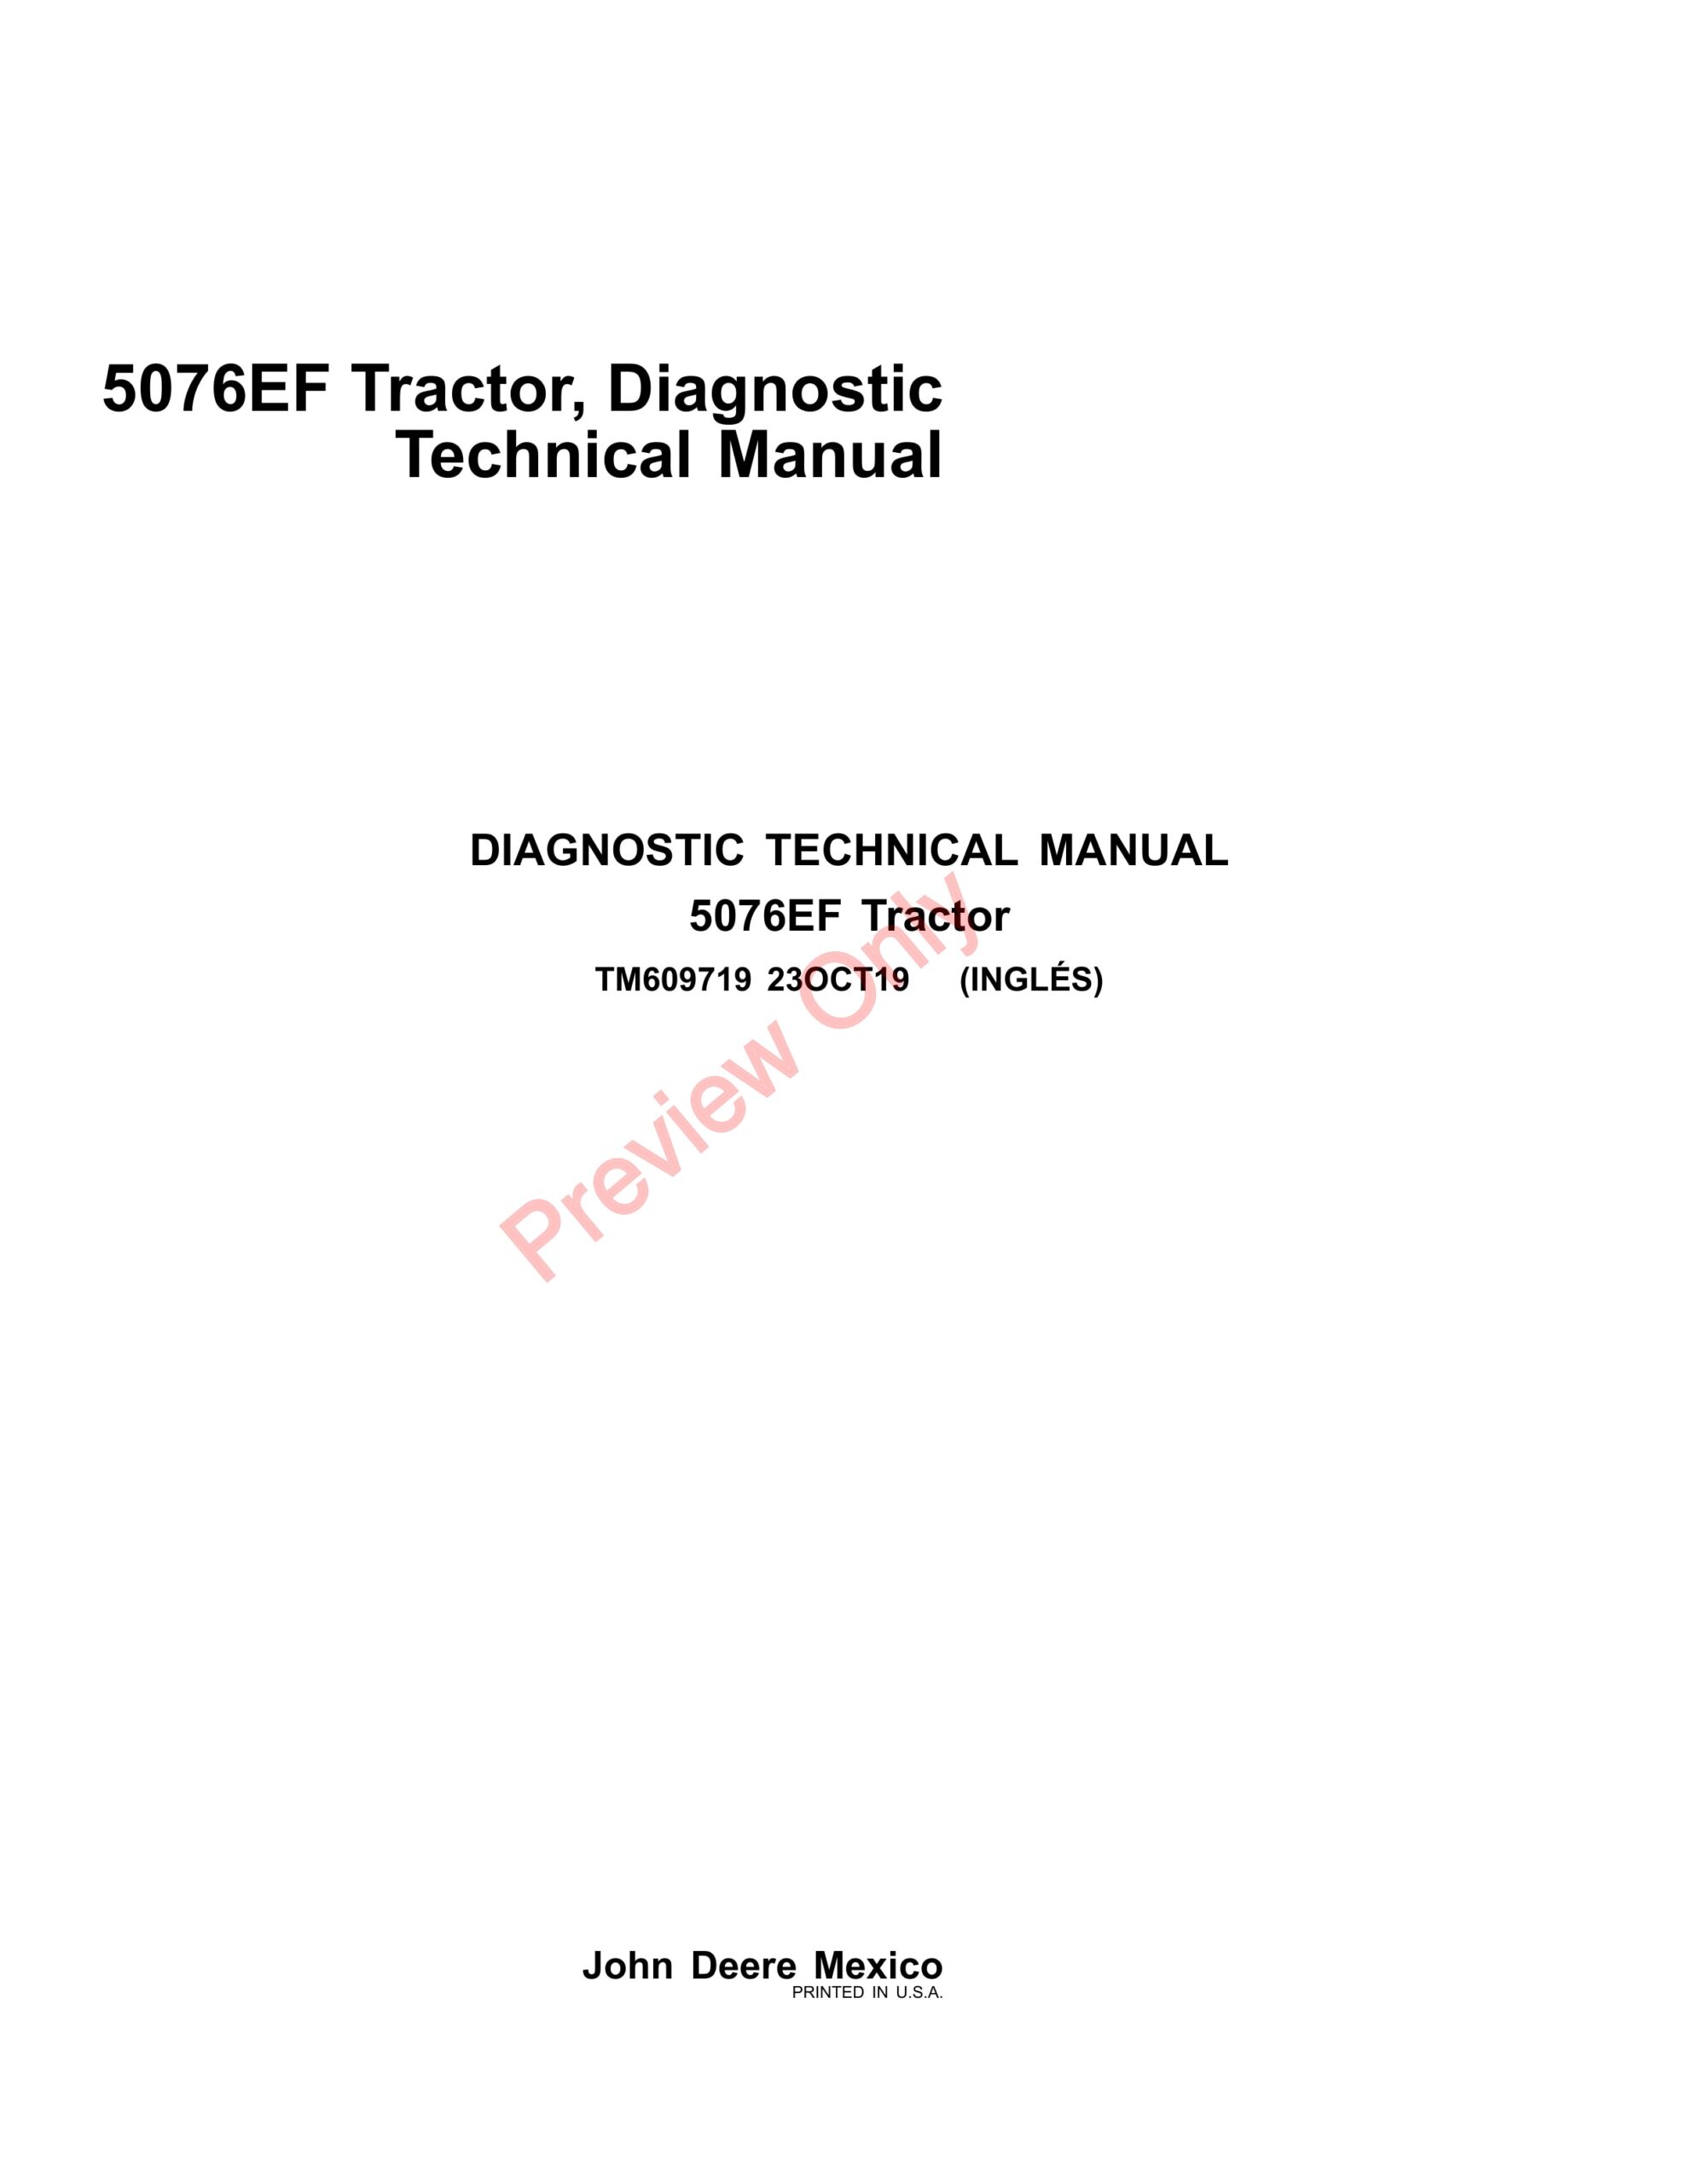 John Deere 5076EF Tractor Diagnostic Technical Manual TM609719 23OCT19-1